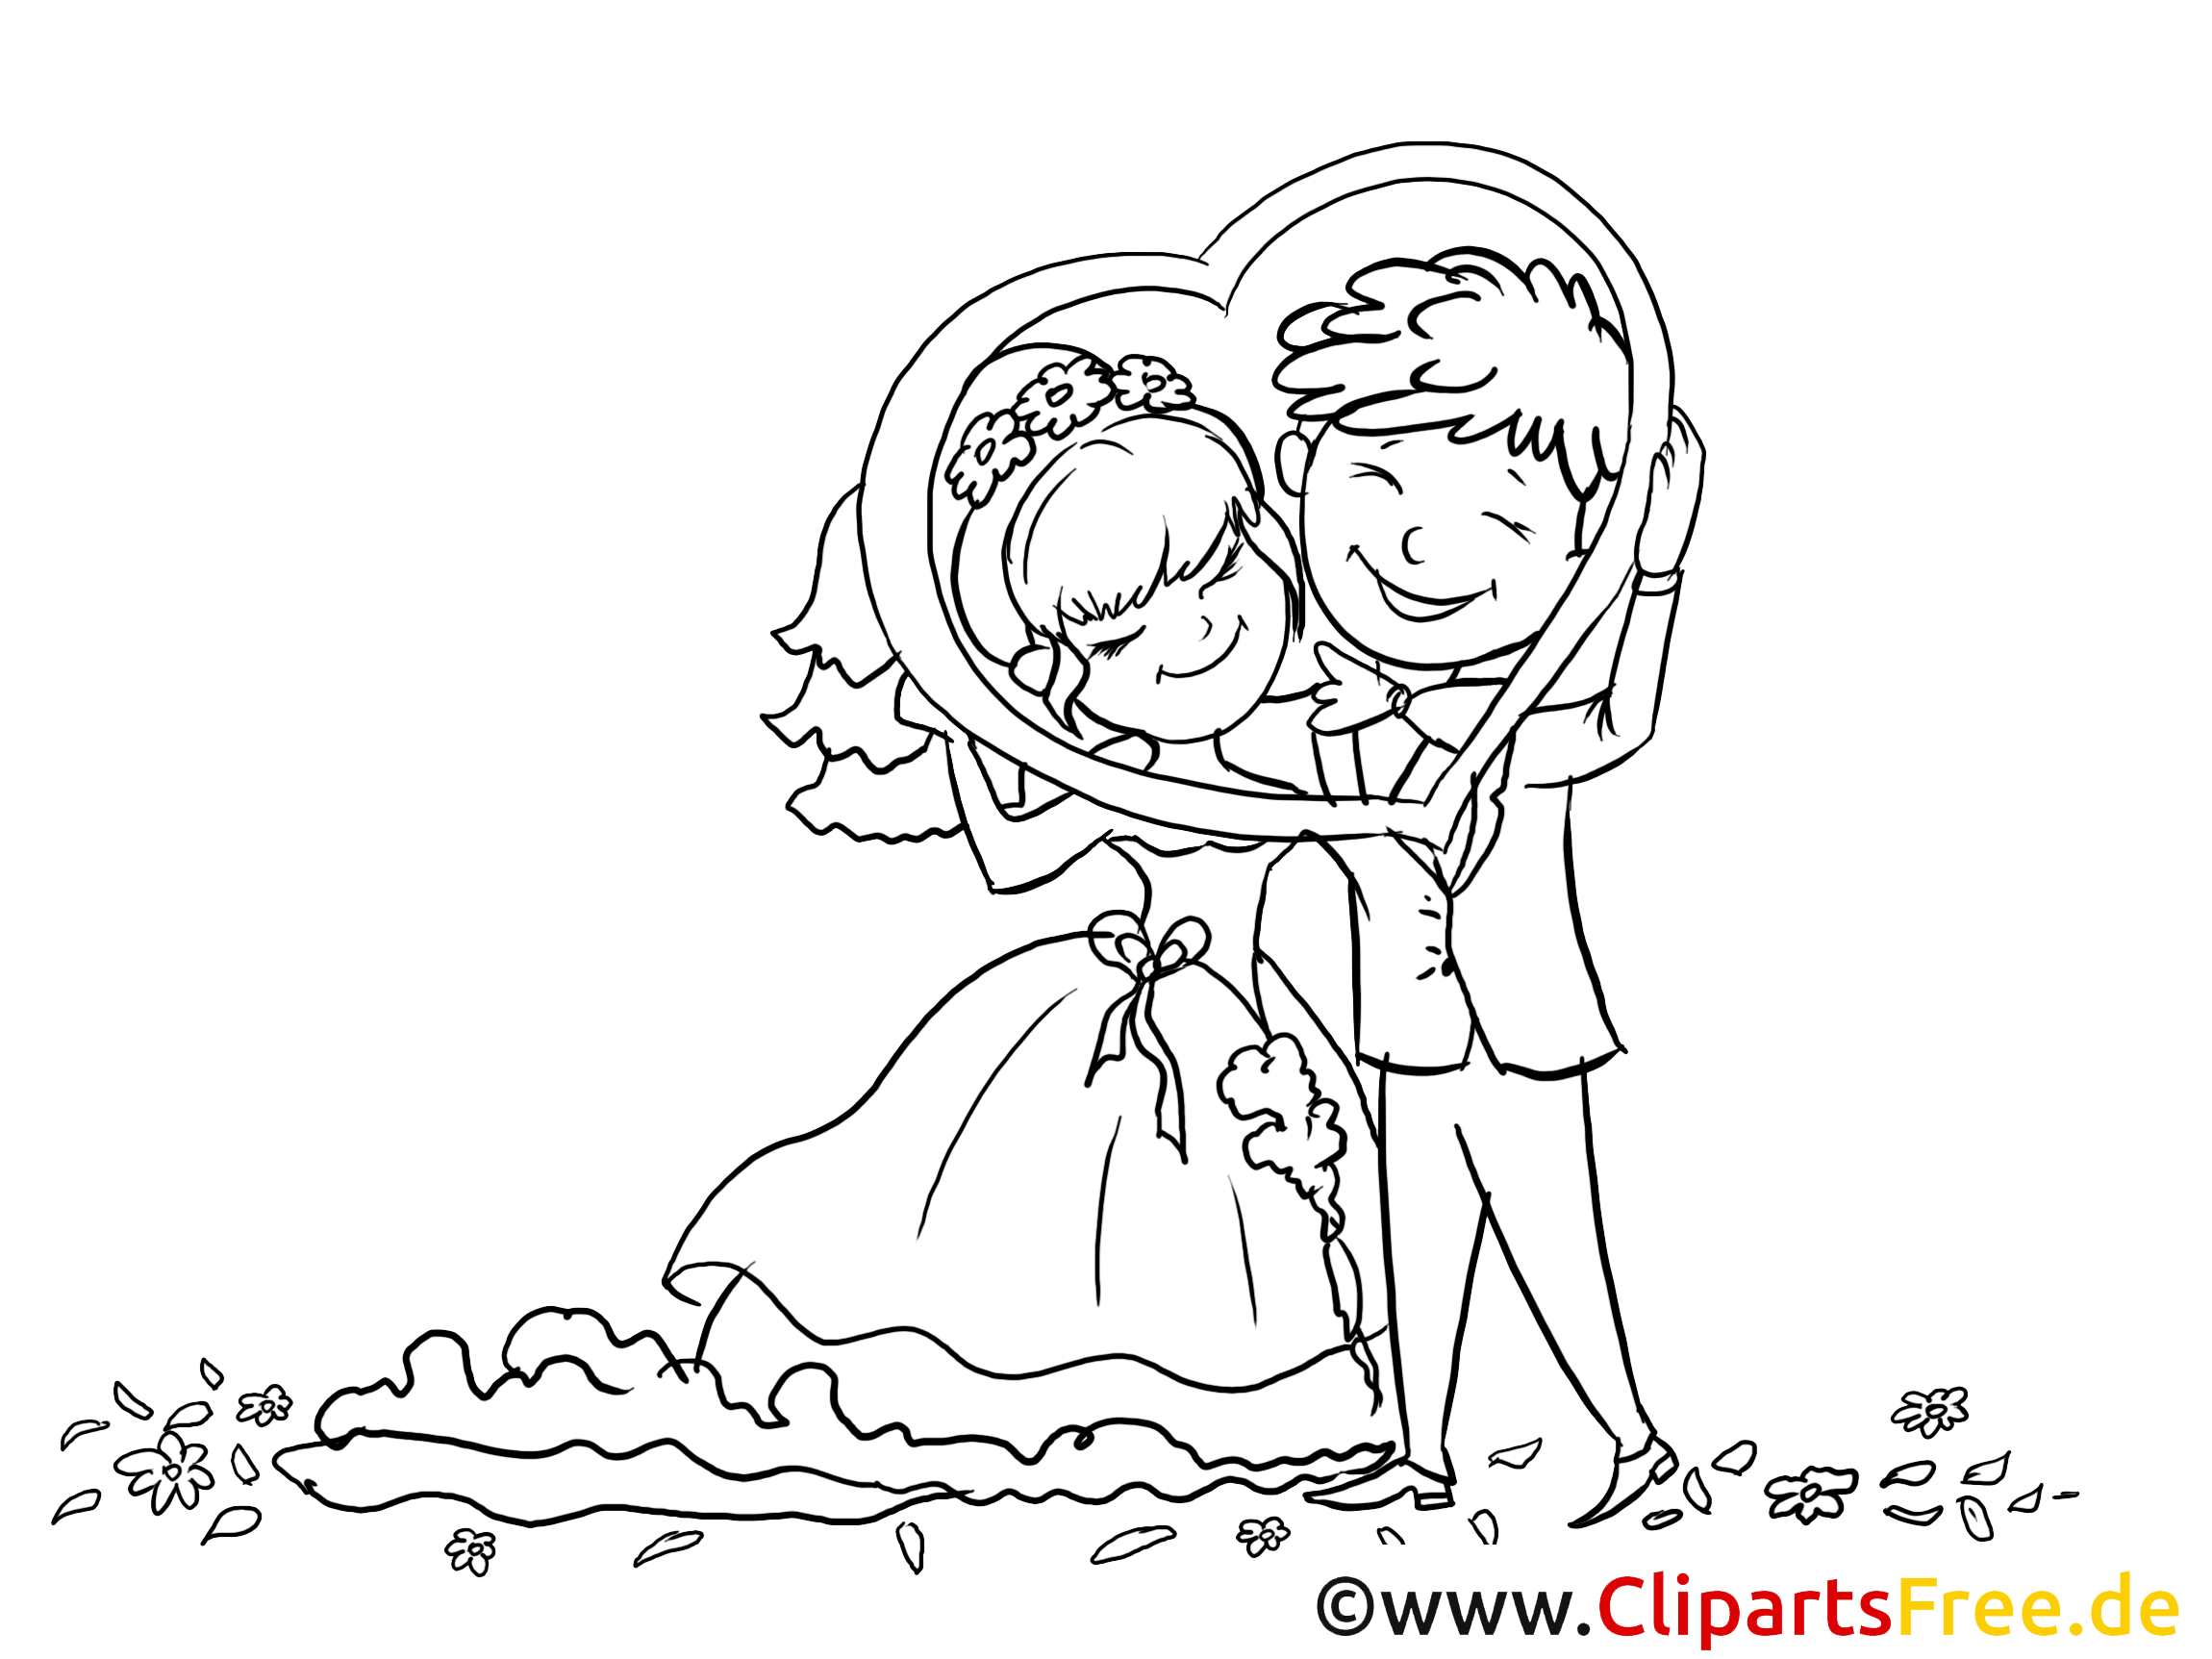 images clipart mariage gratuites - photo #12